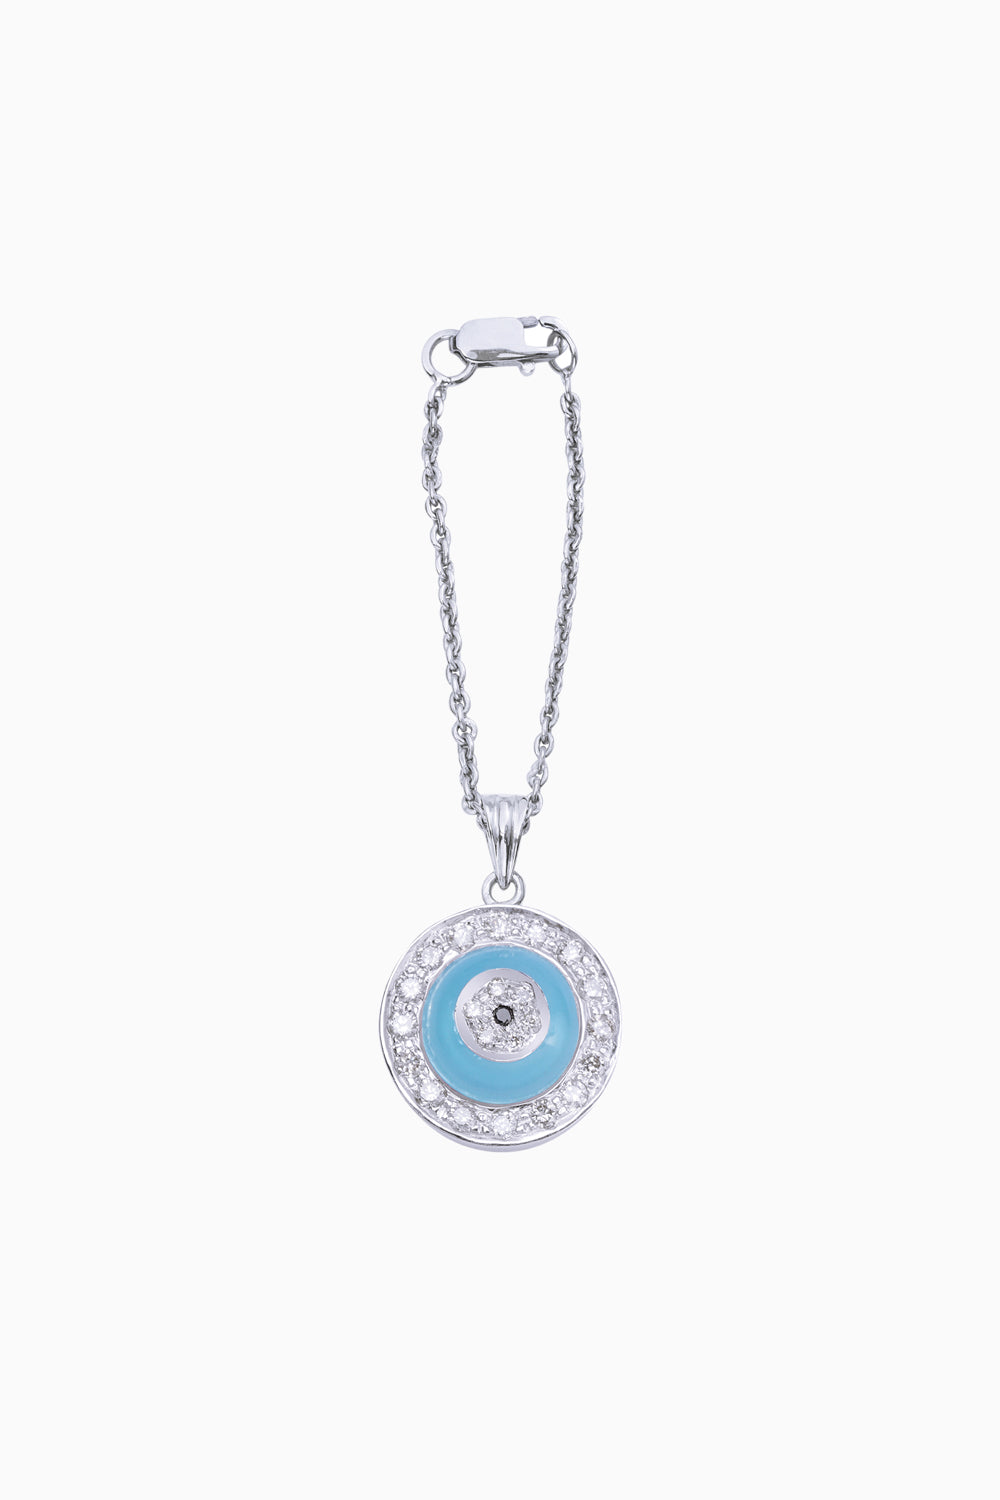 Blue Onyx Donut Diamond Chain Watch 14KT Gold Charm